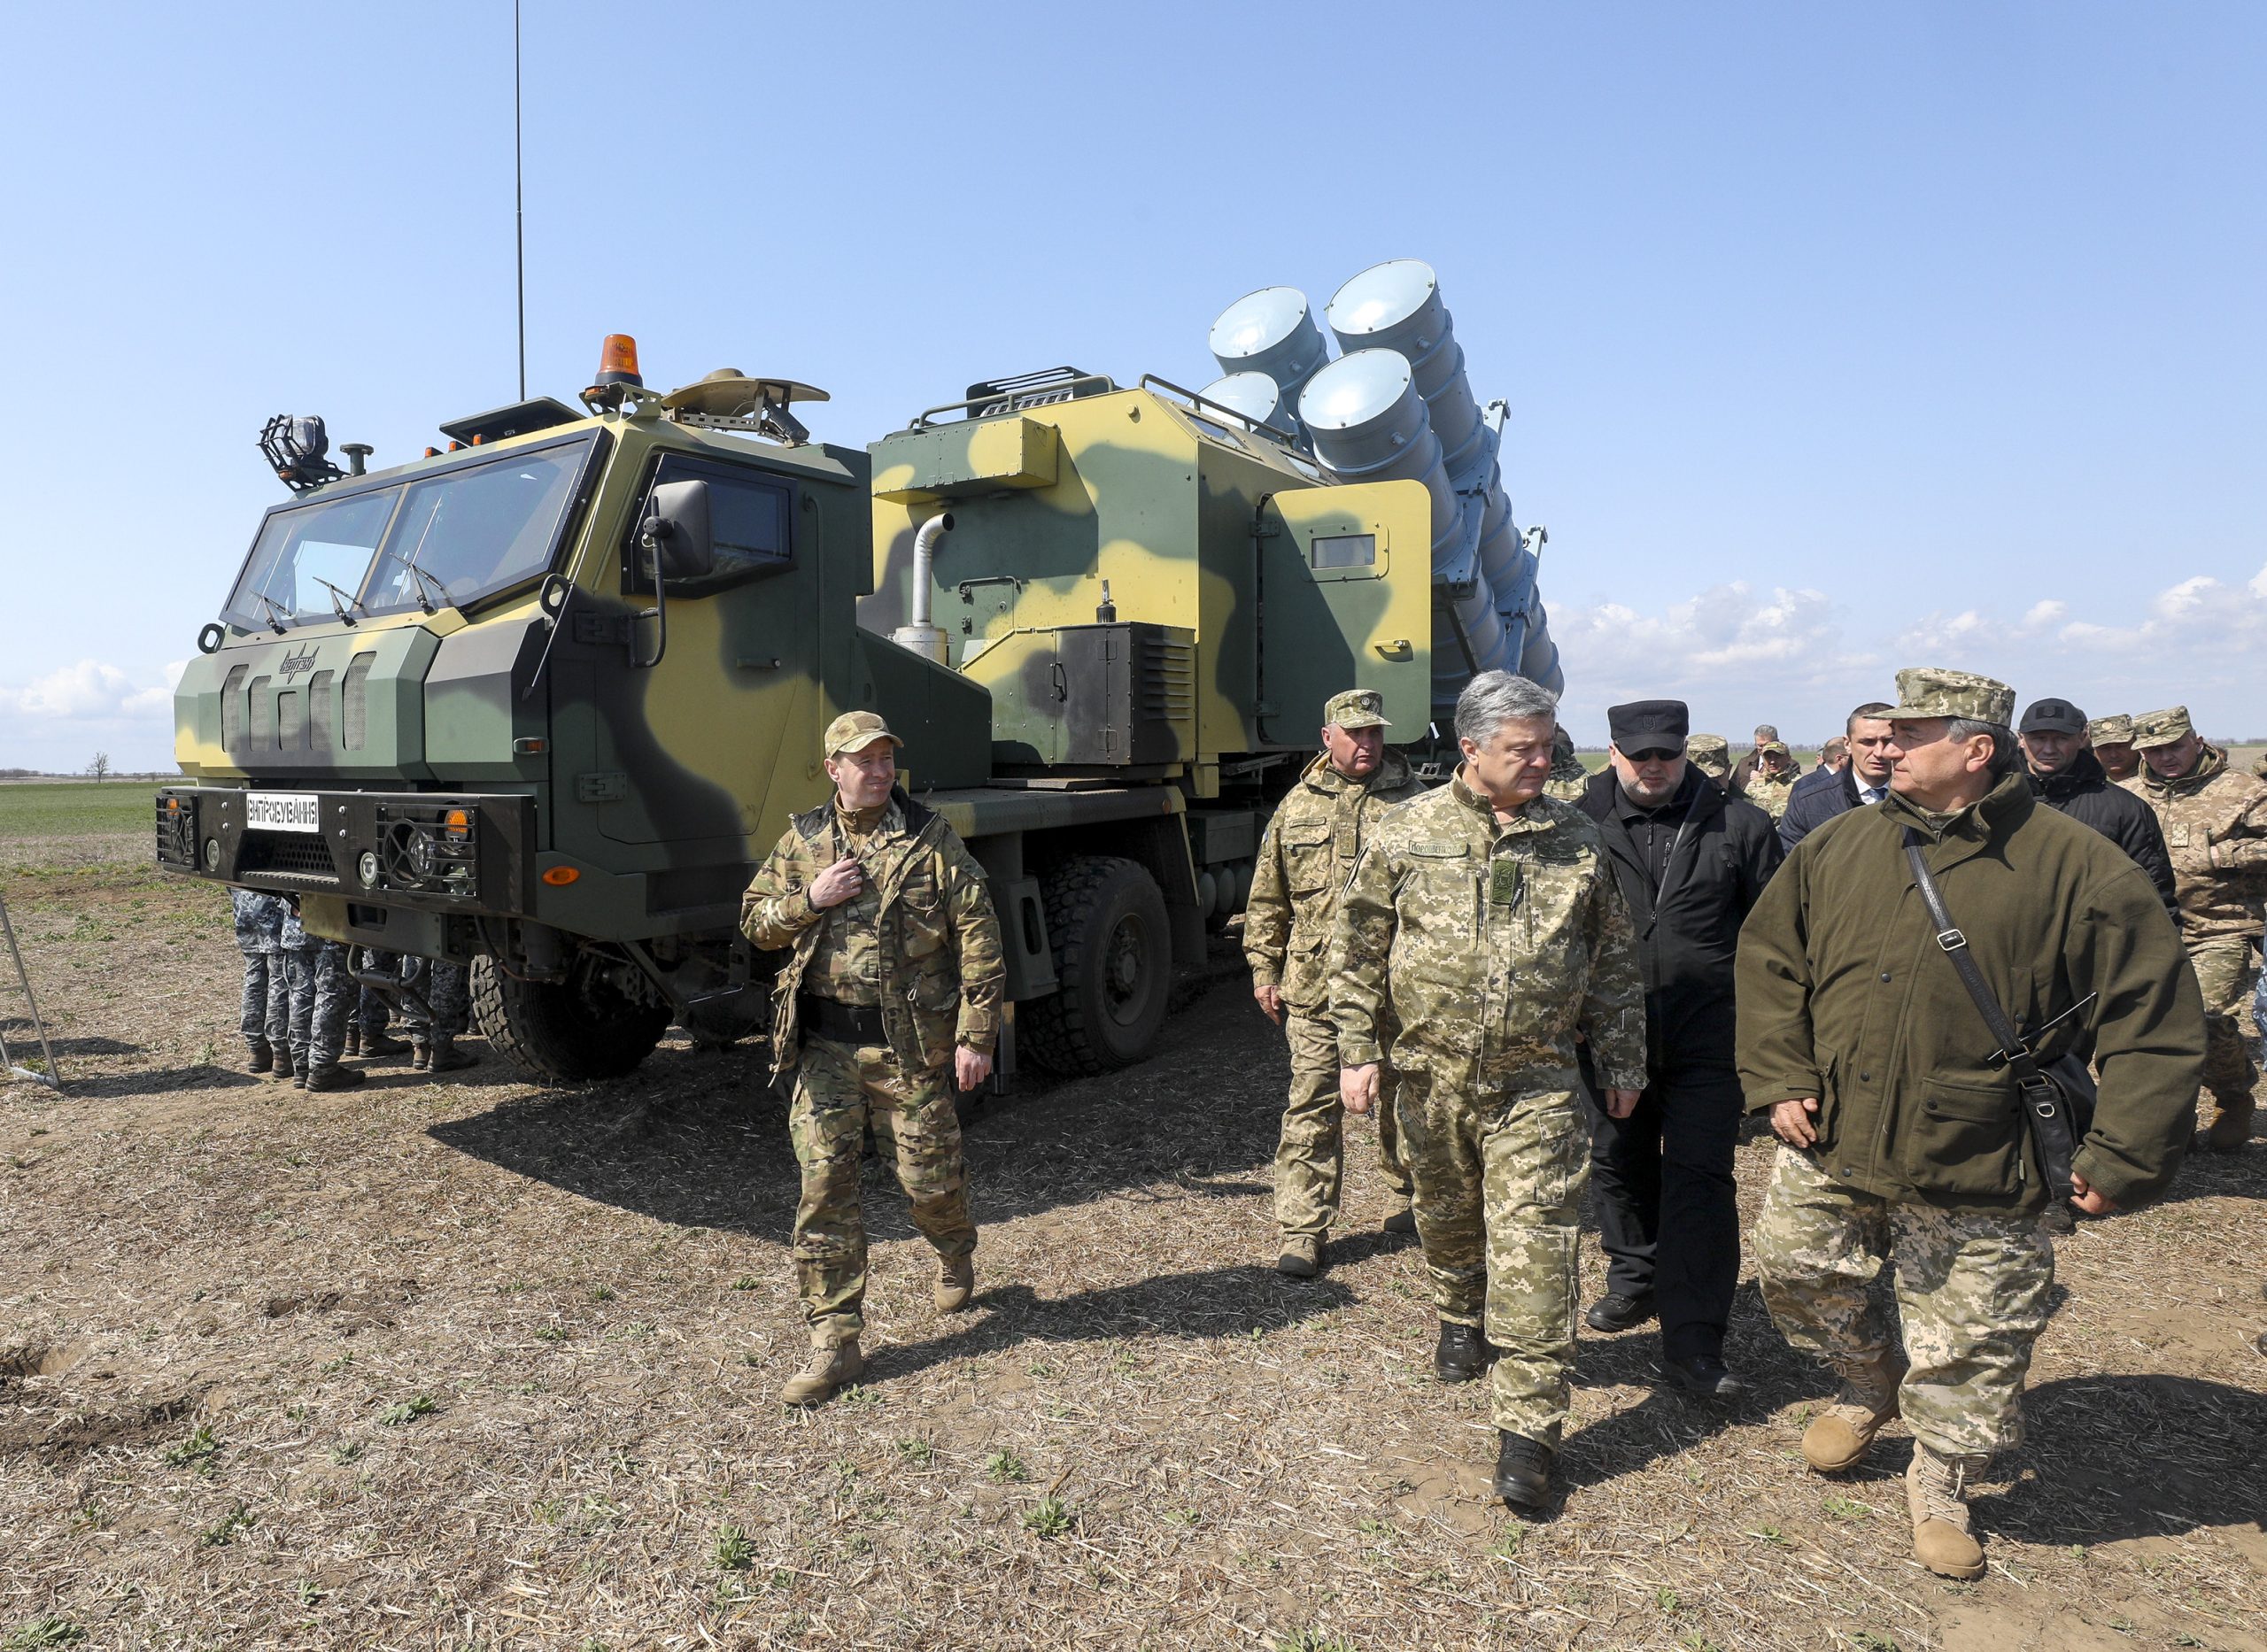 Ουκρανός υπουργός Άμυνας: Το σύστημα επάκτιας άμυνας «Ποσειδών» θα αναπτυχθεί σύντομα στην Αζοφική θάλασσα